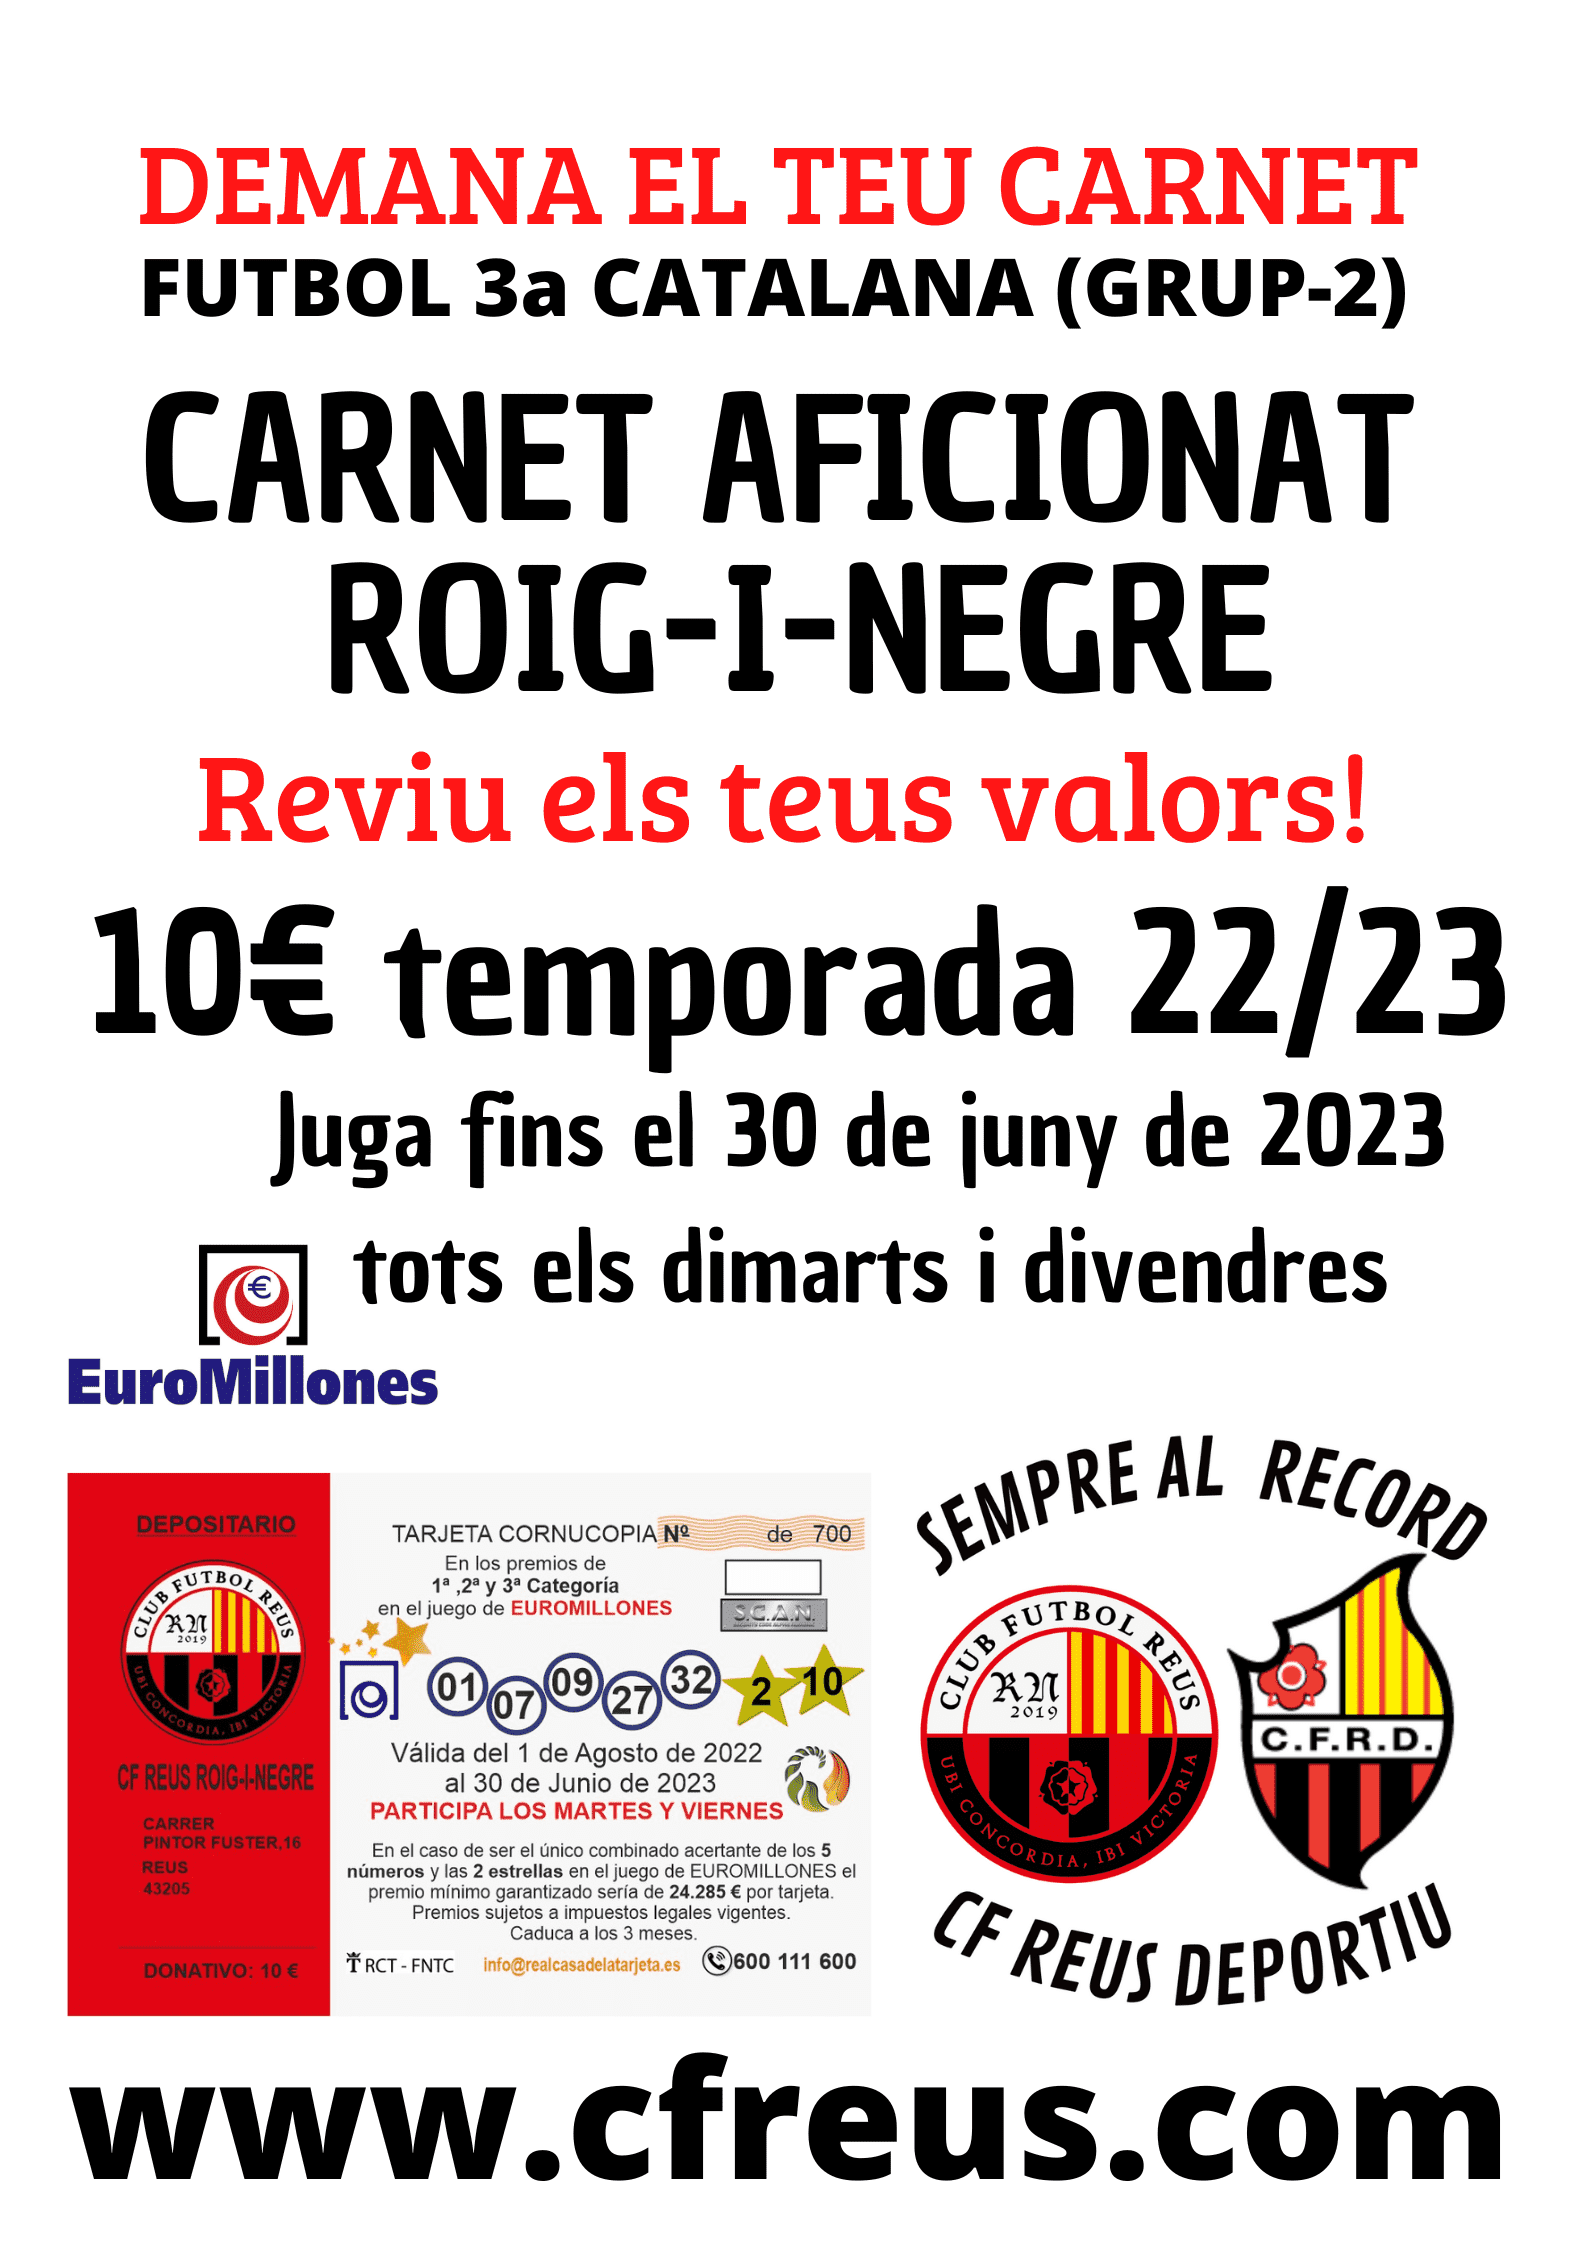 Demana el teu CARNET AFICIONAT ROIG-I-NEGRE per la temporada 22/23, 10€ tota la temporada i jugues al euromillón fins el 30 de juny tots els dimarts i divendres.